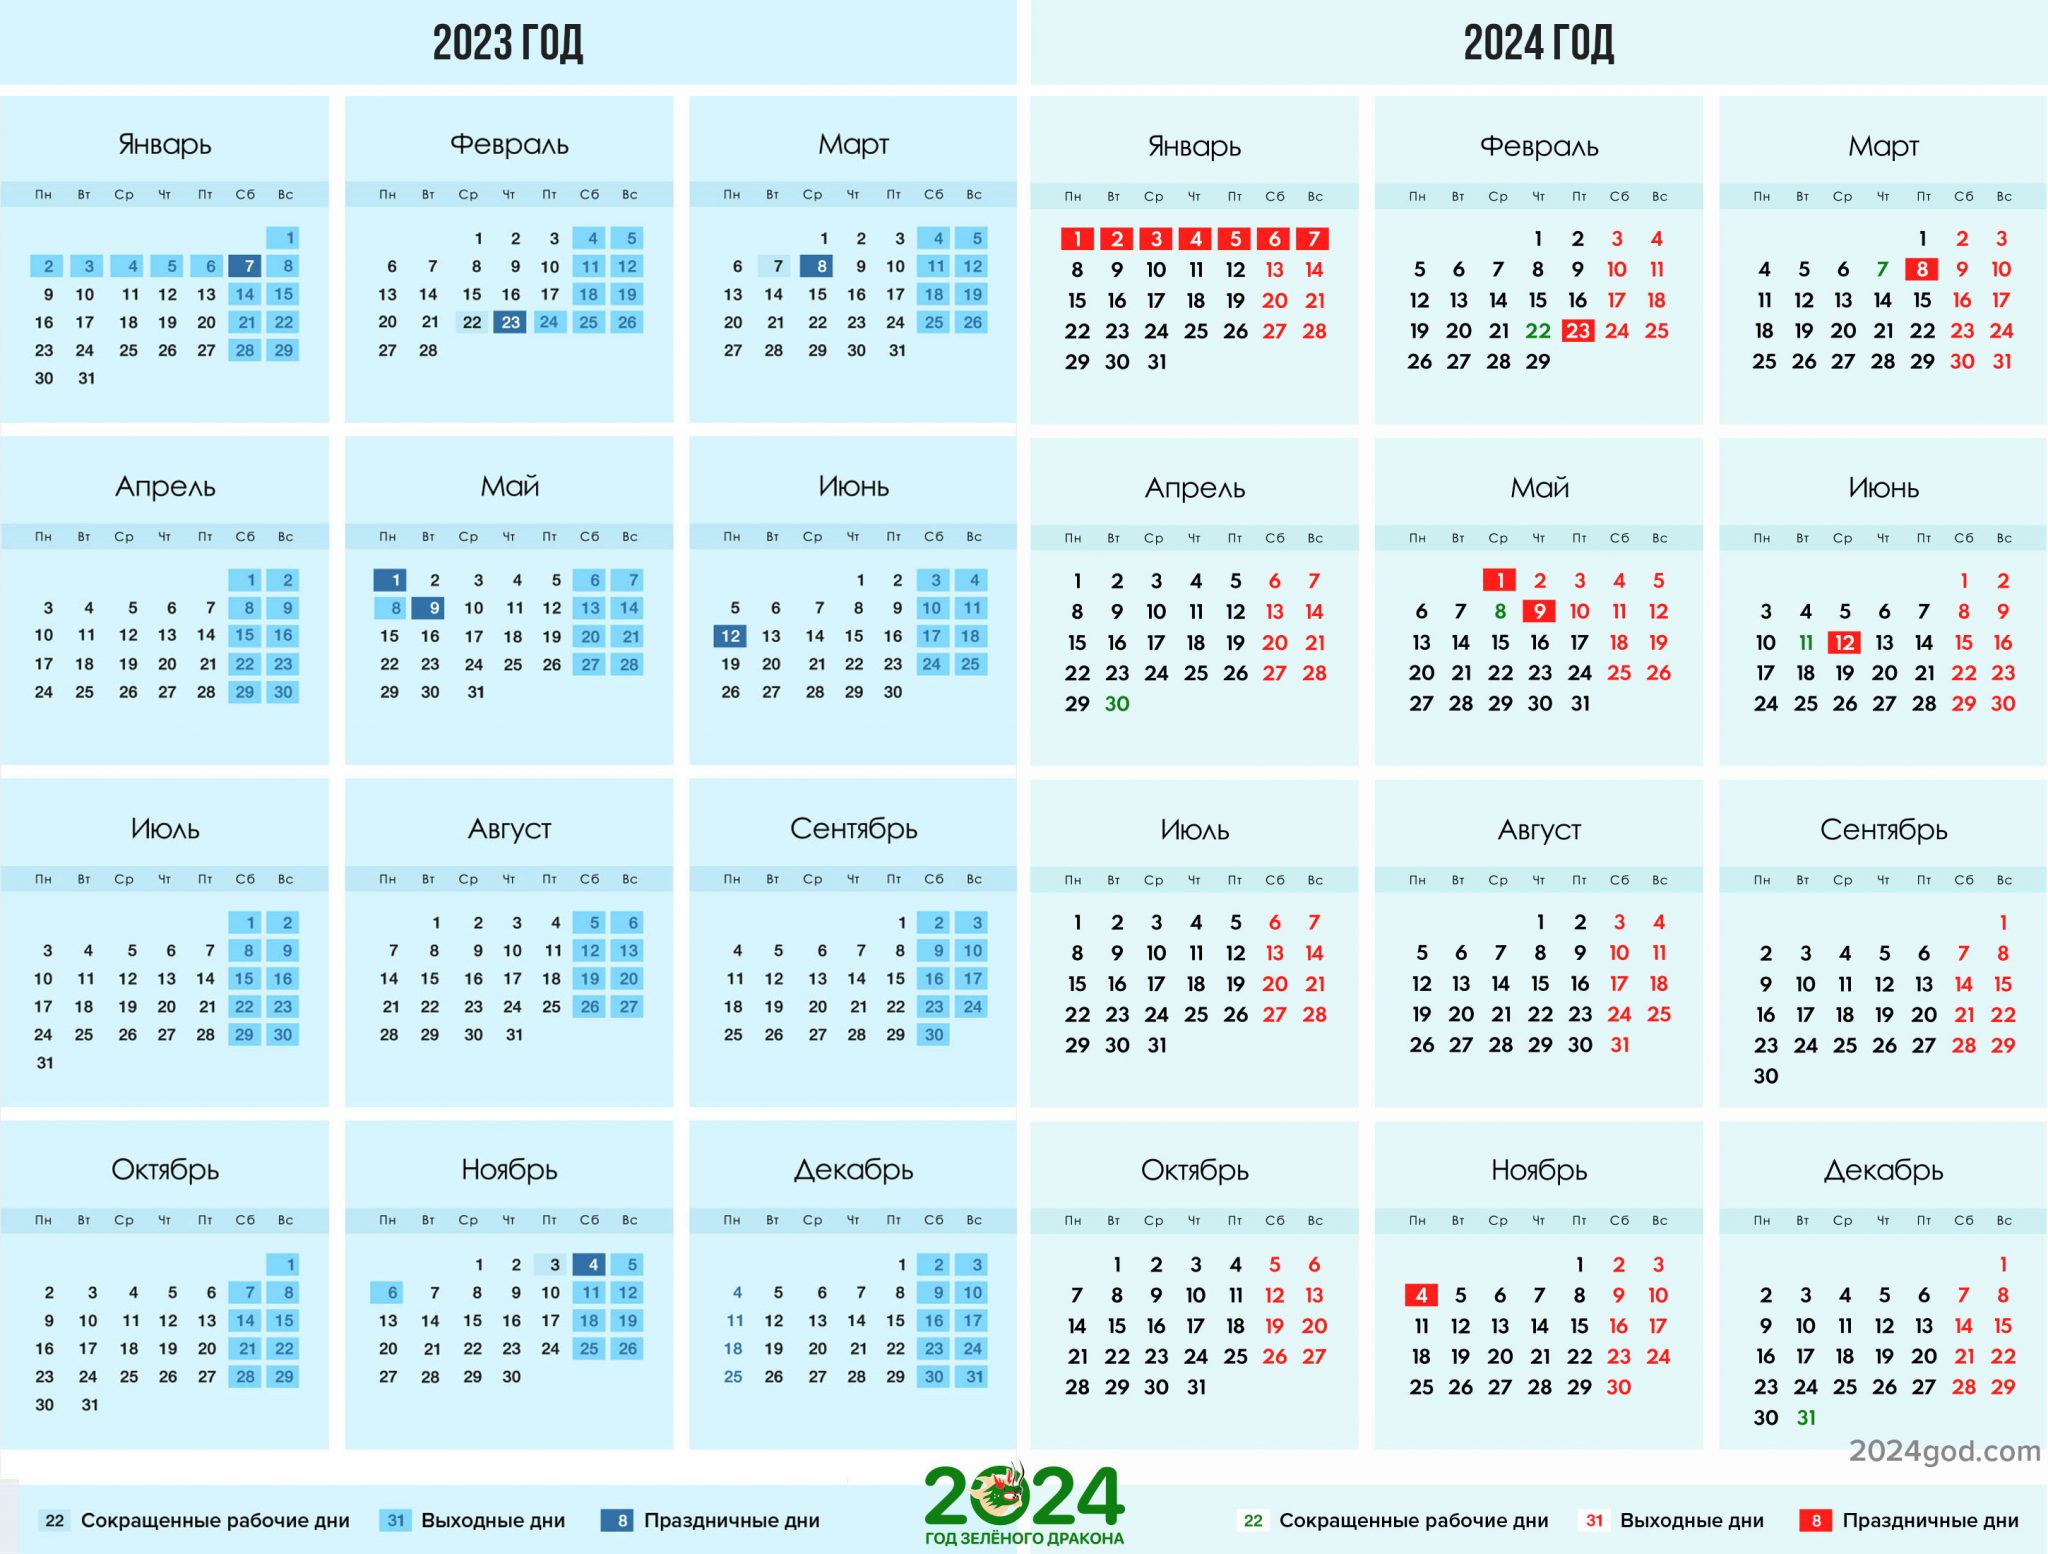 4 мая 2024 рабочий день или нет. Календарь на 2024 год. Календарь на 2024 год с праздниками. Календарь выходных на 2024 год. Календарь с праздничными днями на 2024 год.